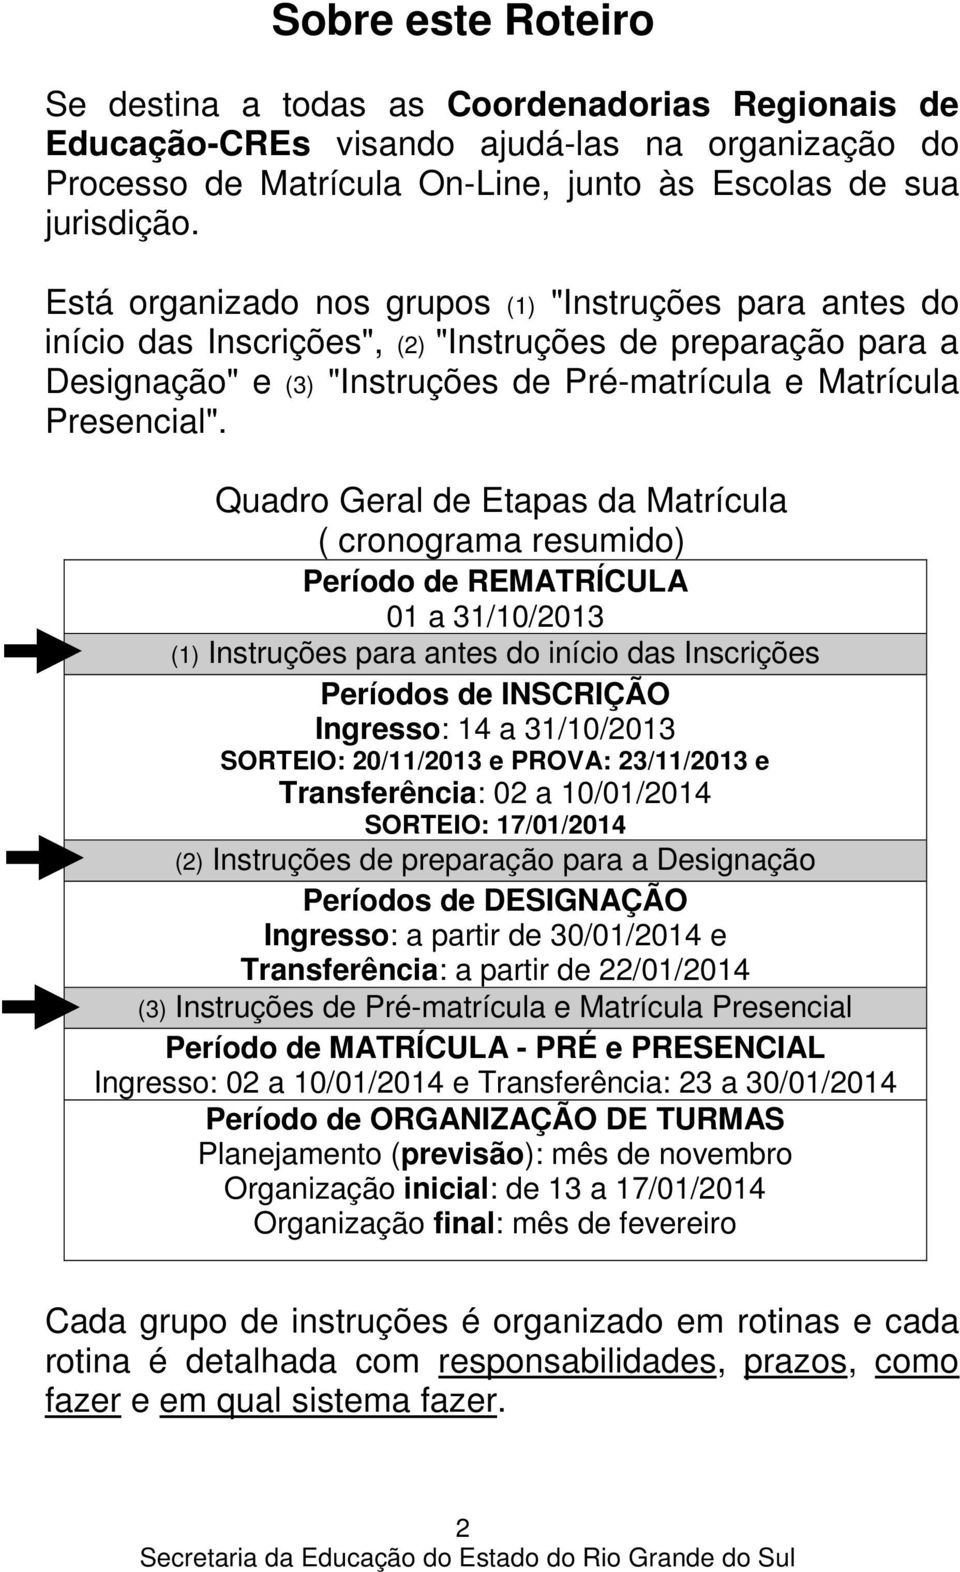 Quadro Geral de Etapas da Matrícula ( cronograma resumido) Período de REMATRÍCULA 01 a 31/10/2013 (1) Instruções para antes do início das Inscrições Períodos de INSCRIÇÃO Ingresso: 14 a 31/10/2013